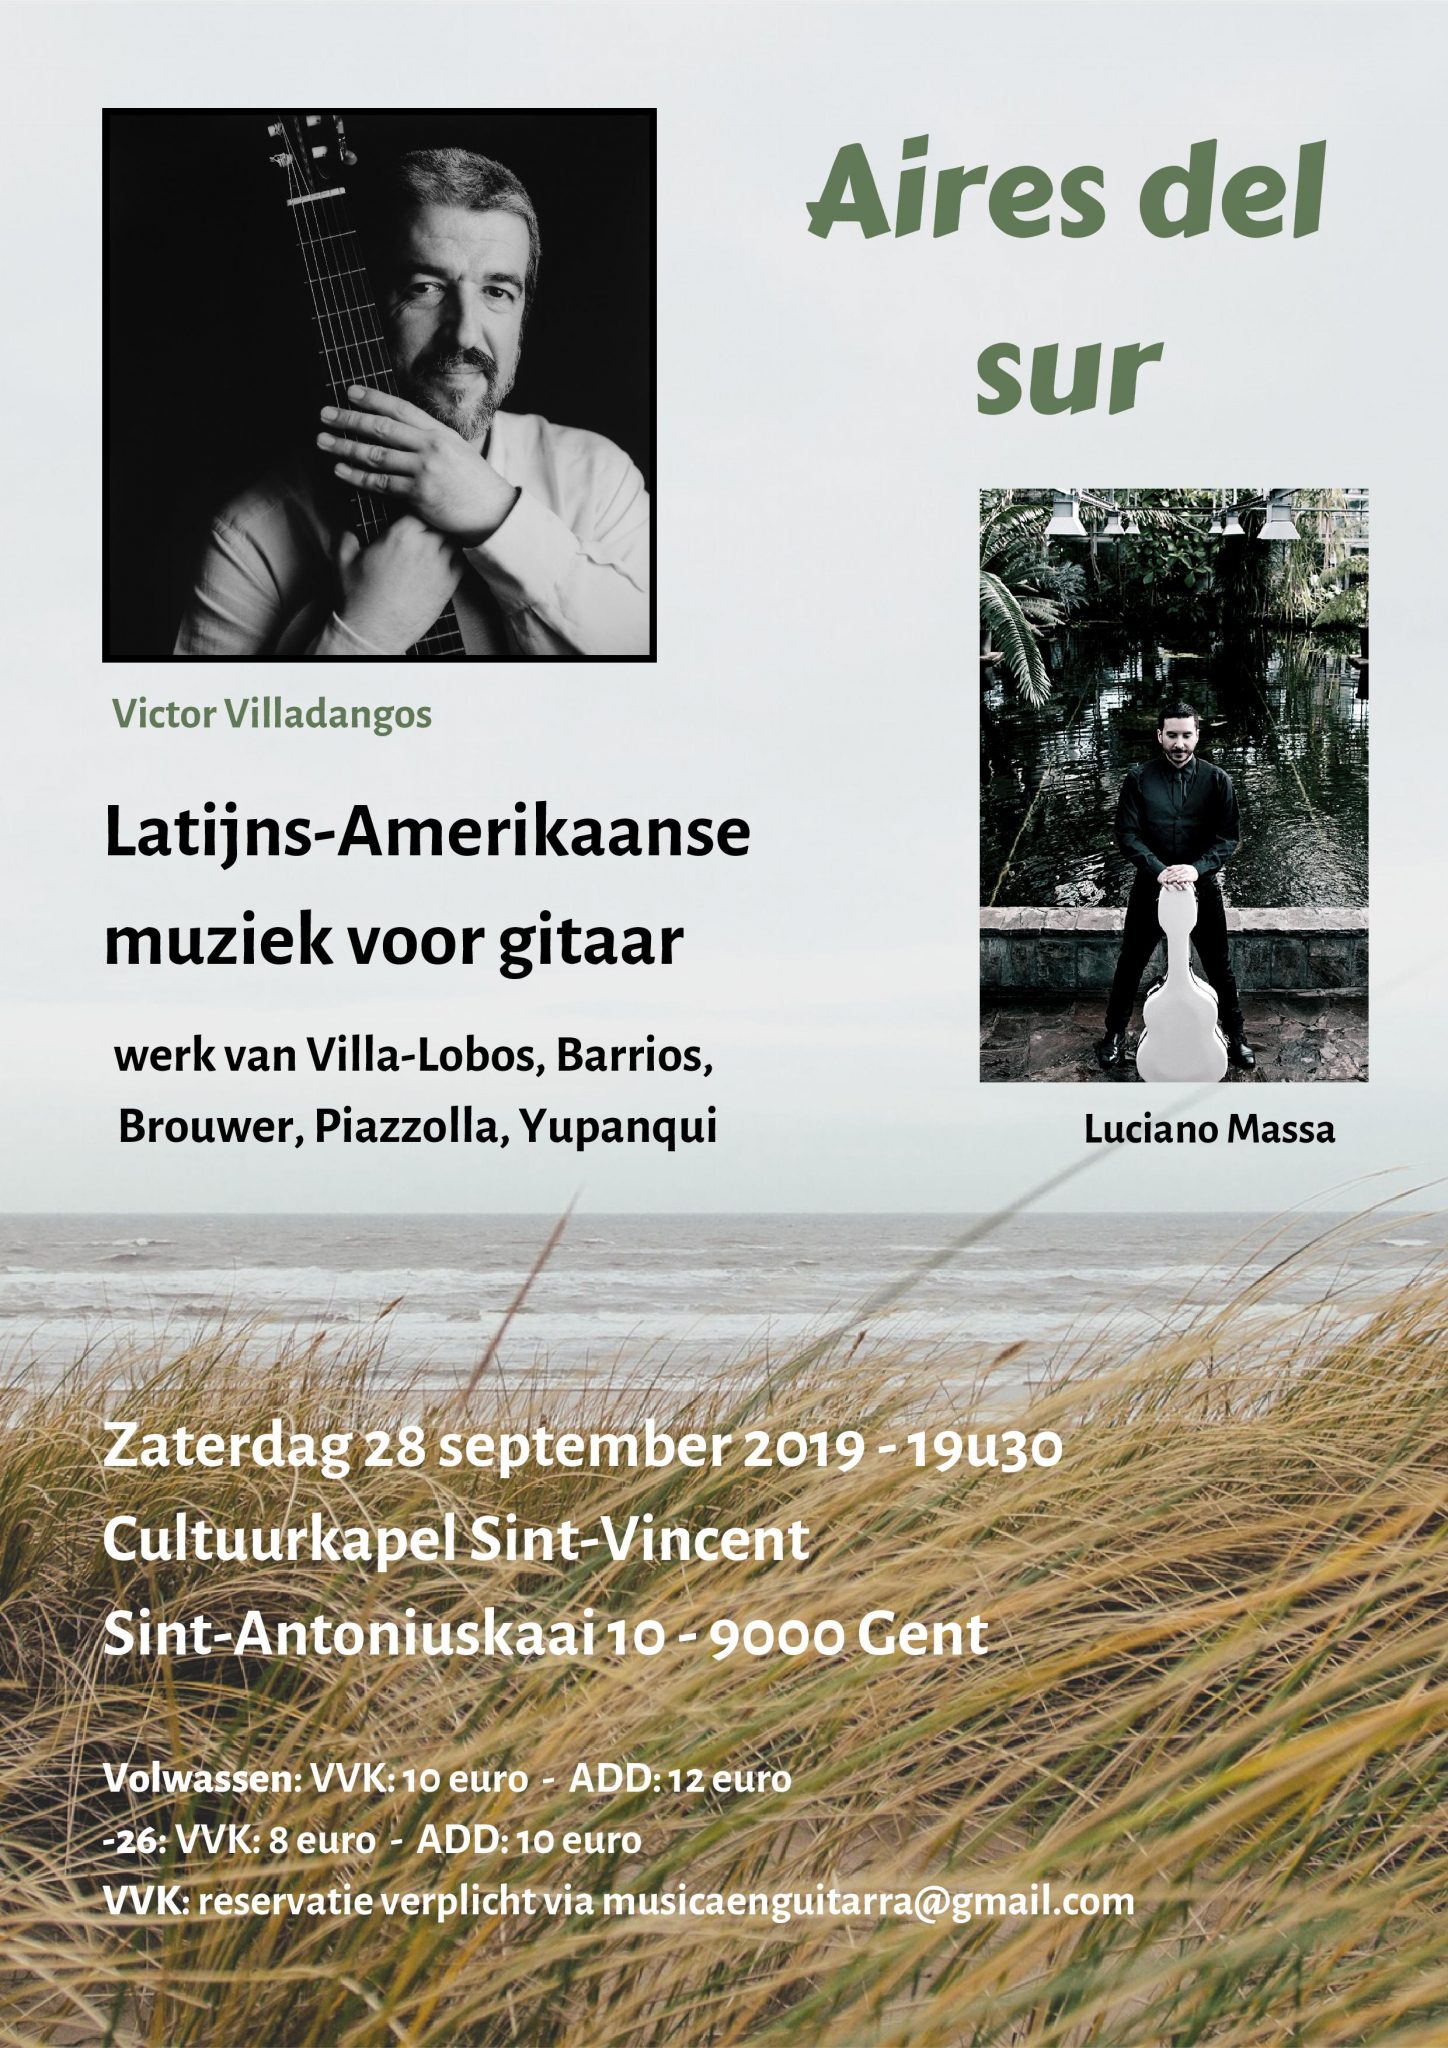 "Aires del sur" - Victor Villadangos & Luciano Massa (Latijns-amerikaanse muziek voor gitaar) @ Cultuurkapel Sint-Vincent | Gent | Vlaanderen | België